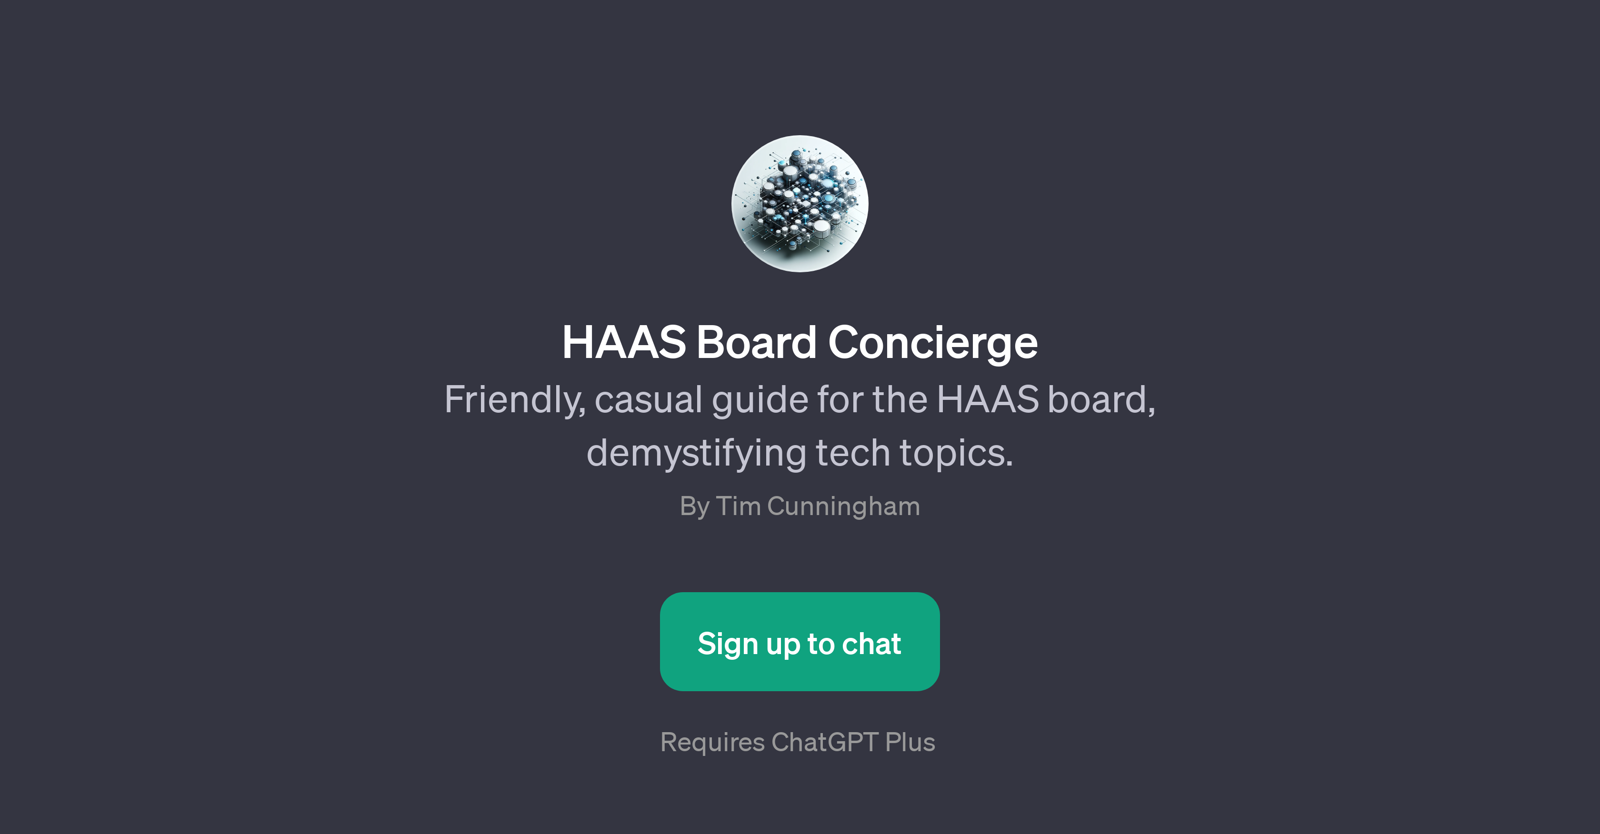 HAAS Board Concierge website